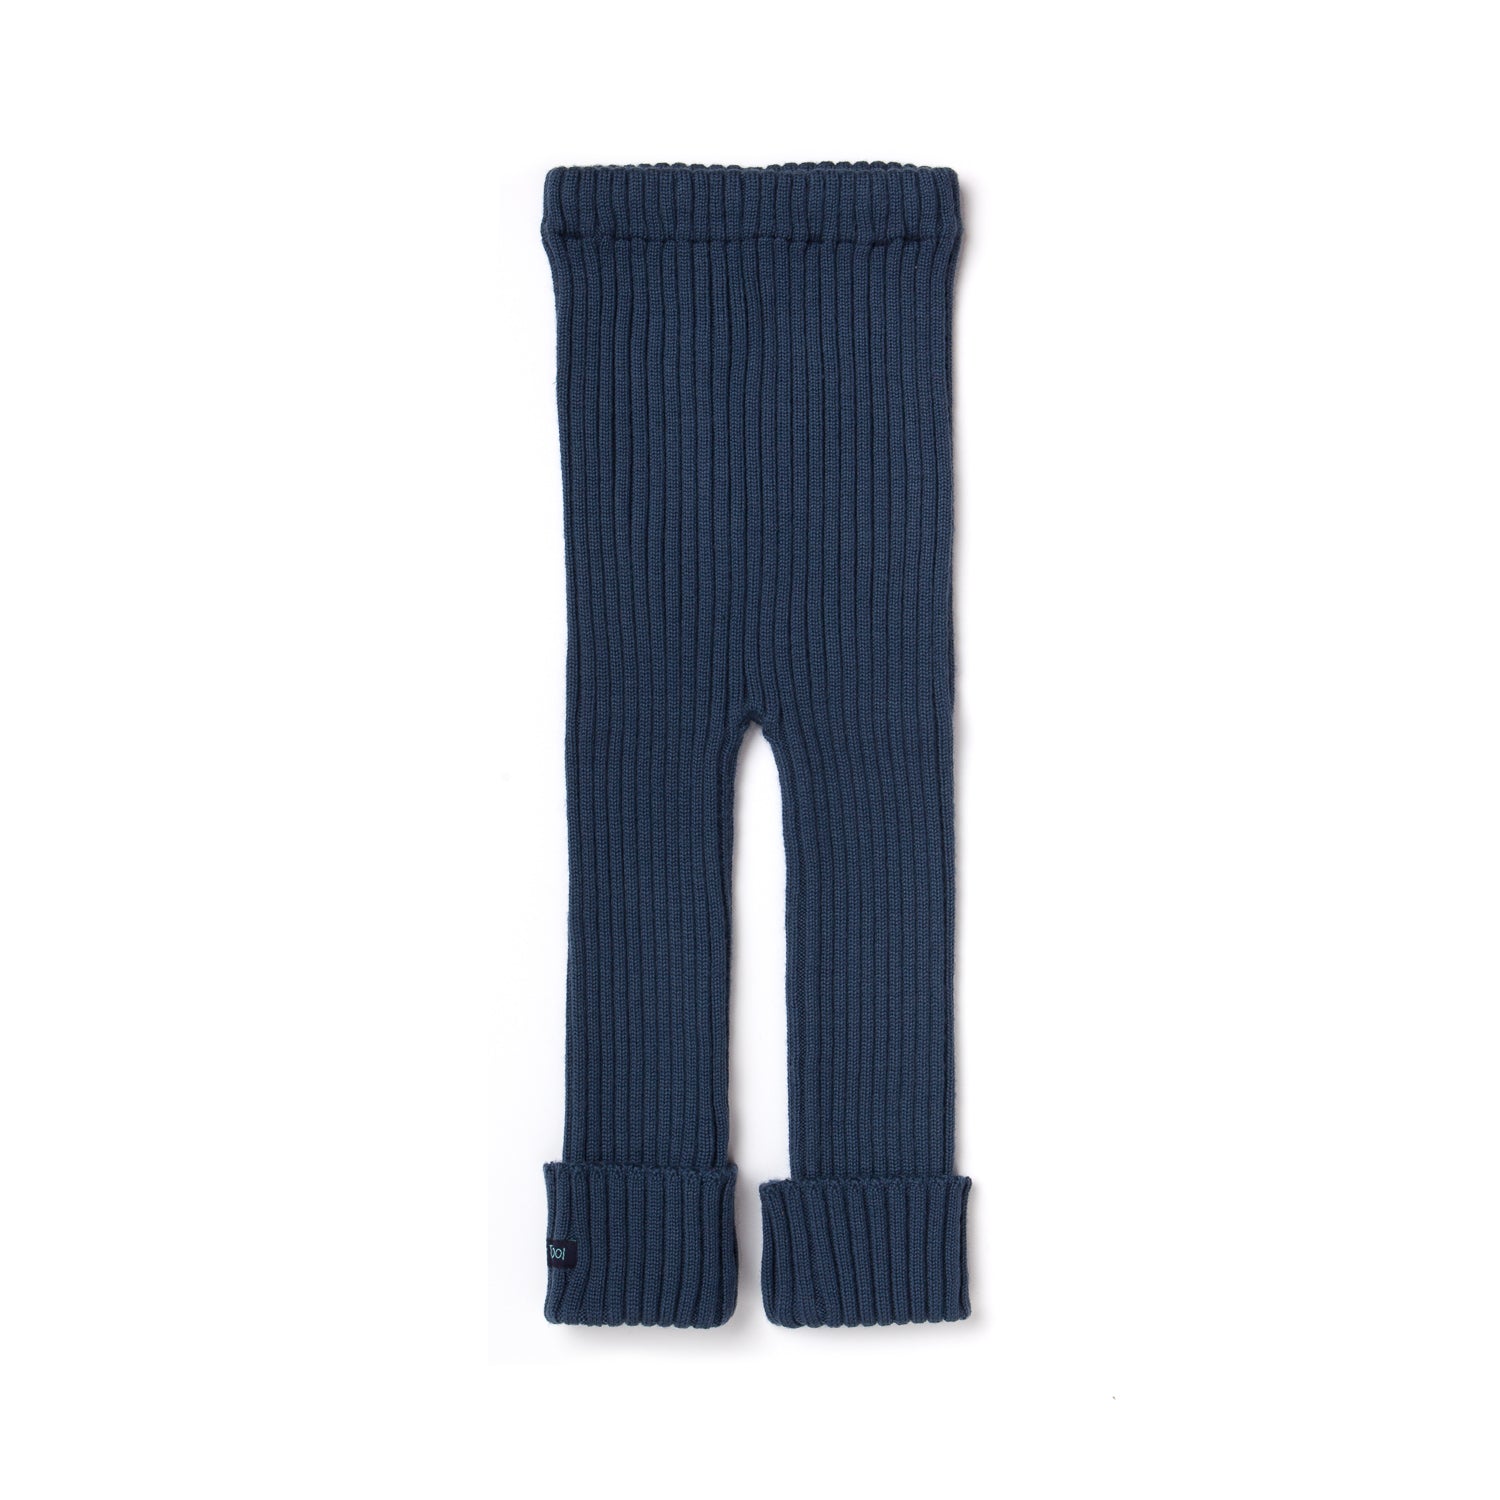 Navy Blue Knitted Leggings Plain Ankle-Length Leggings LS31